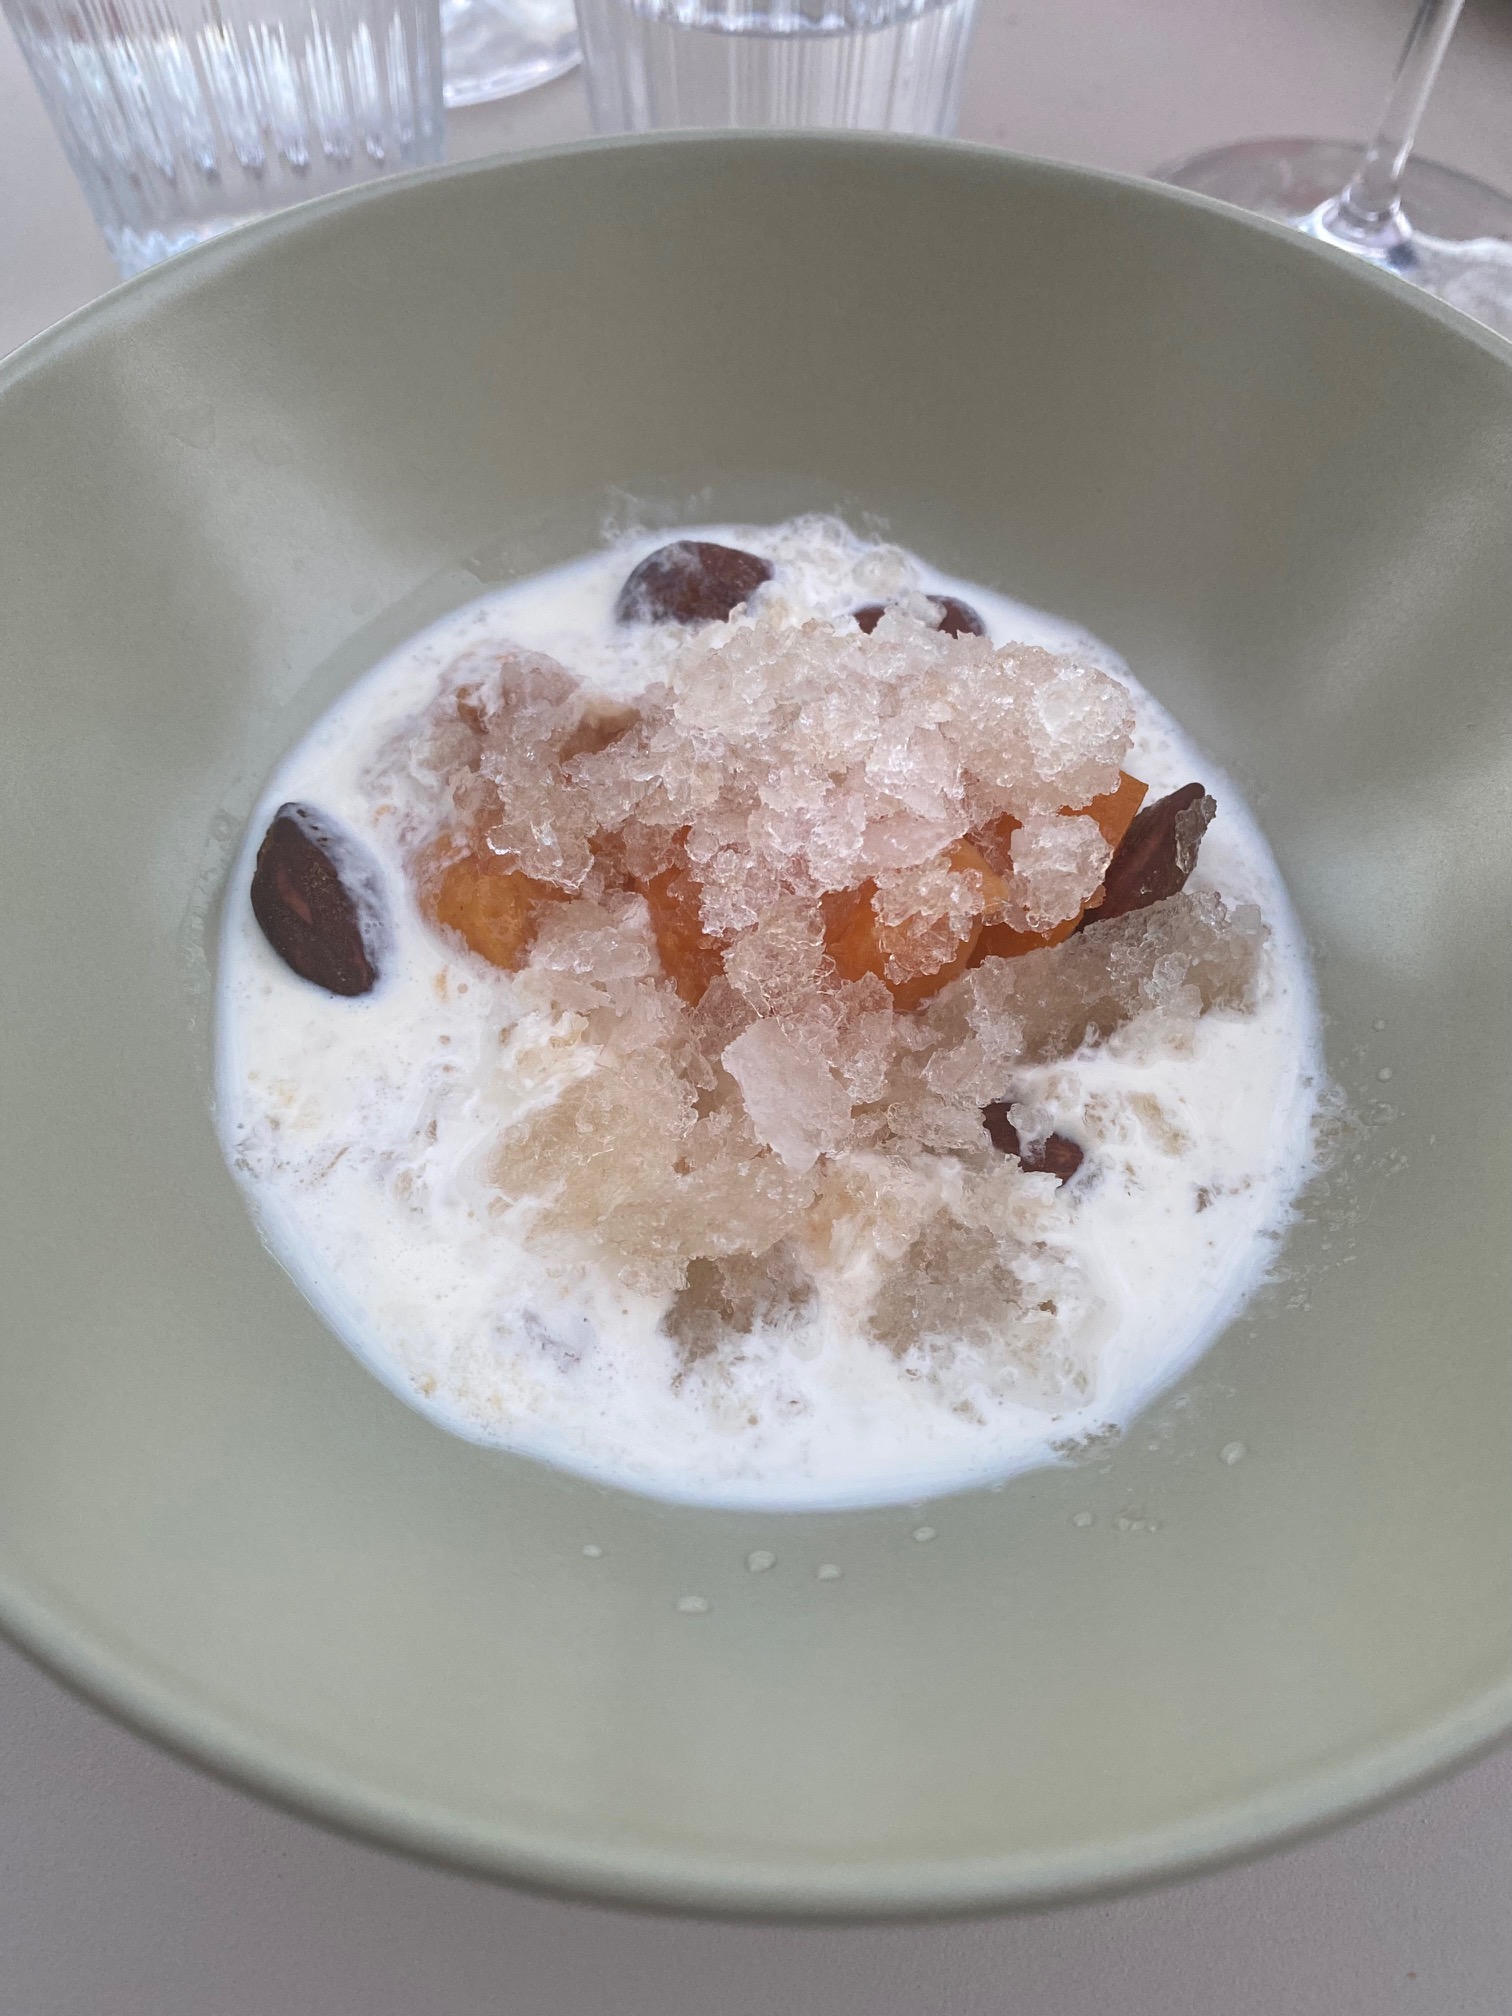 Abricots infusés à la lavande, amandes caramélisées, lait de noyaux d’abricots et granité lavande chez Grive (Lyon)